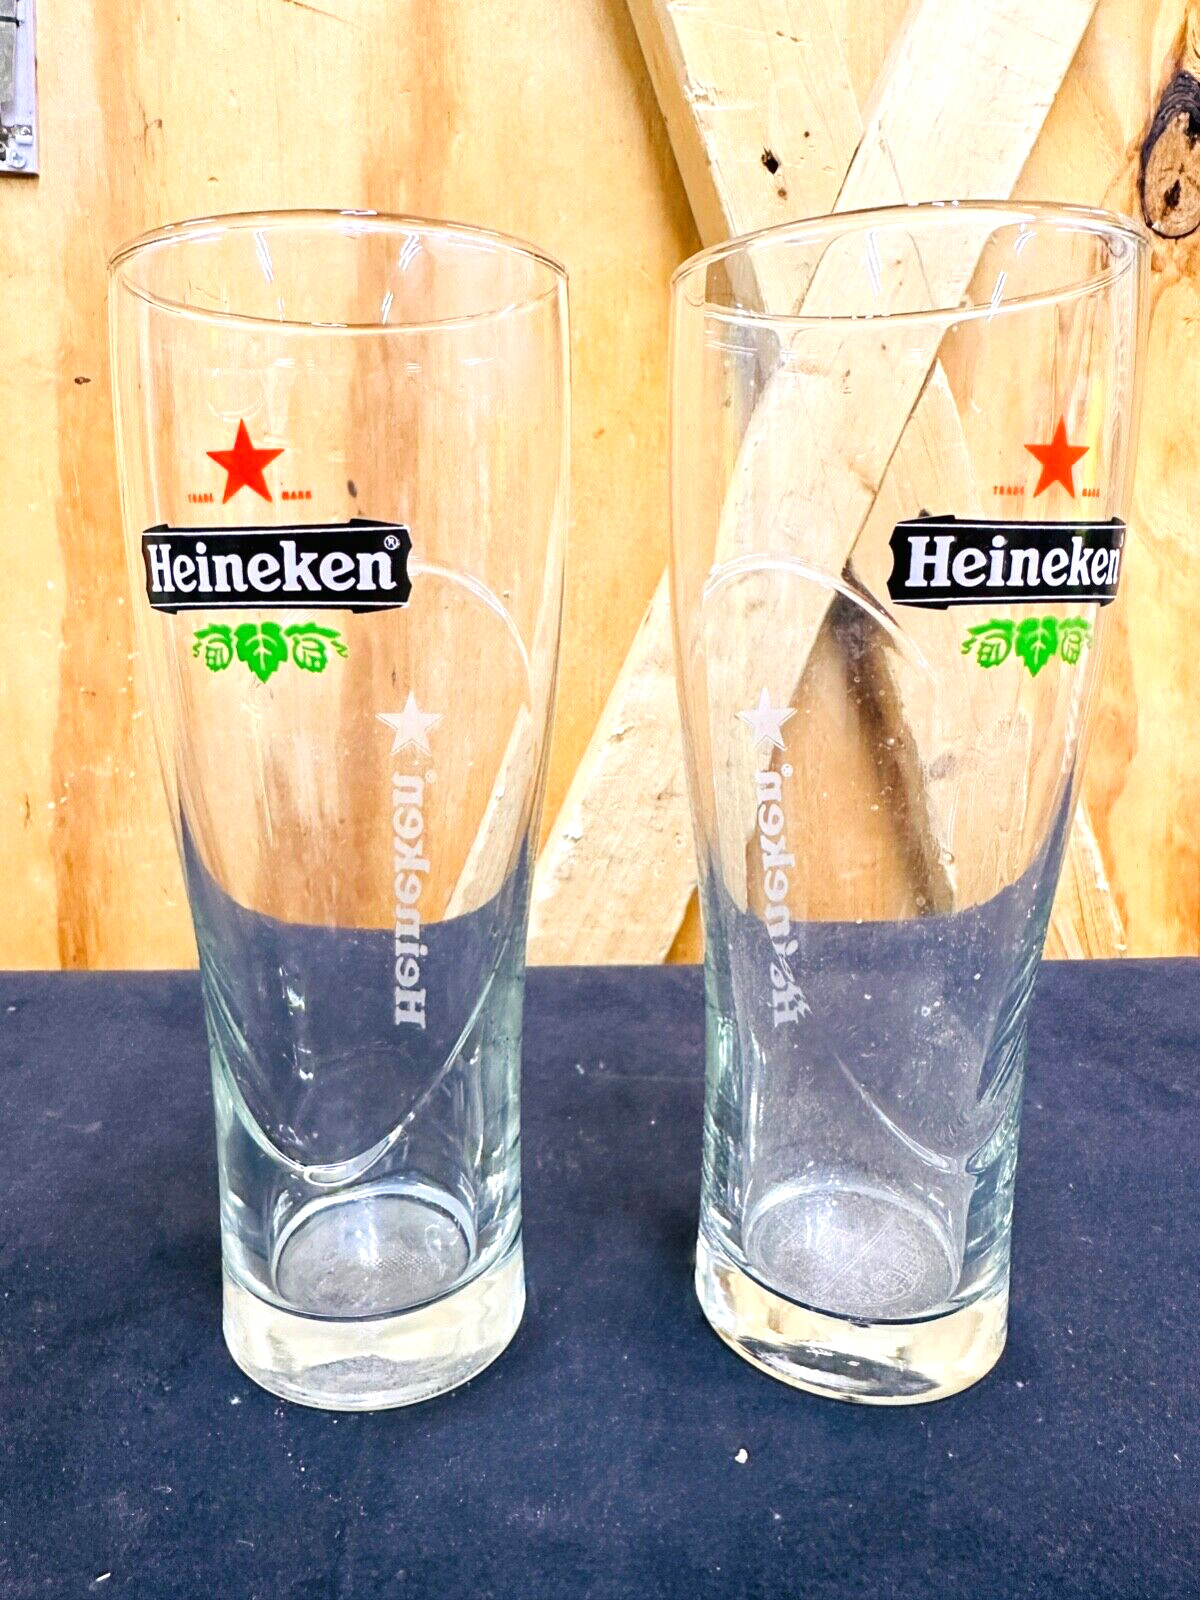 Pair of Heineken Red Star Holiday Branded Embossed Beer Glasses - New Old Stock